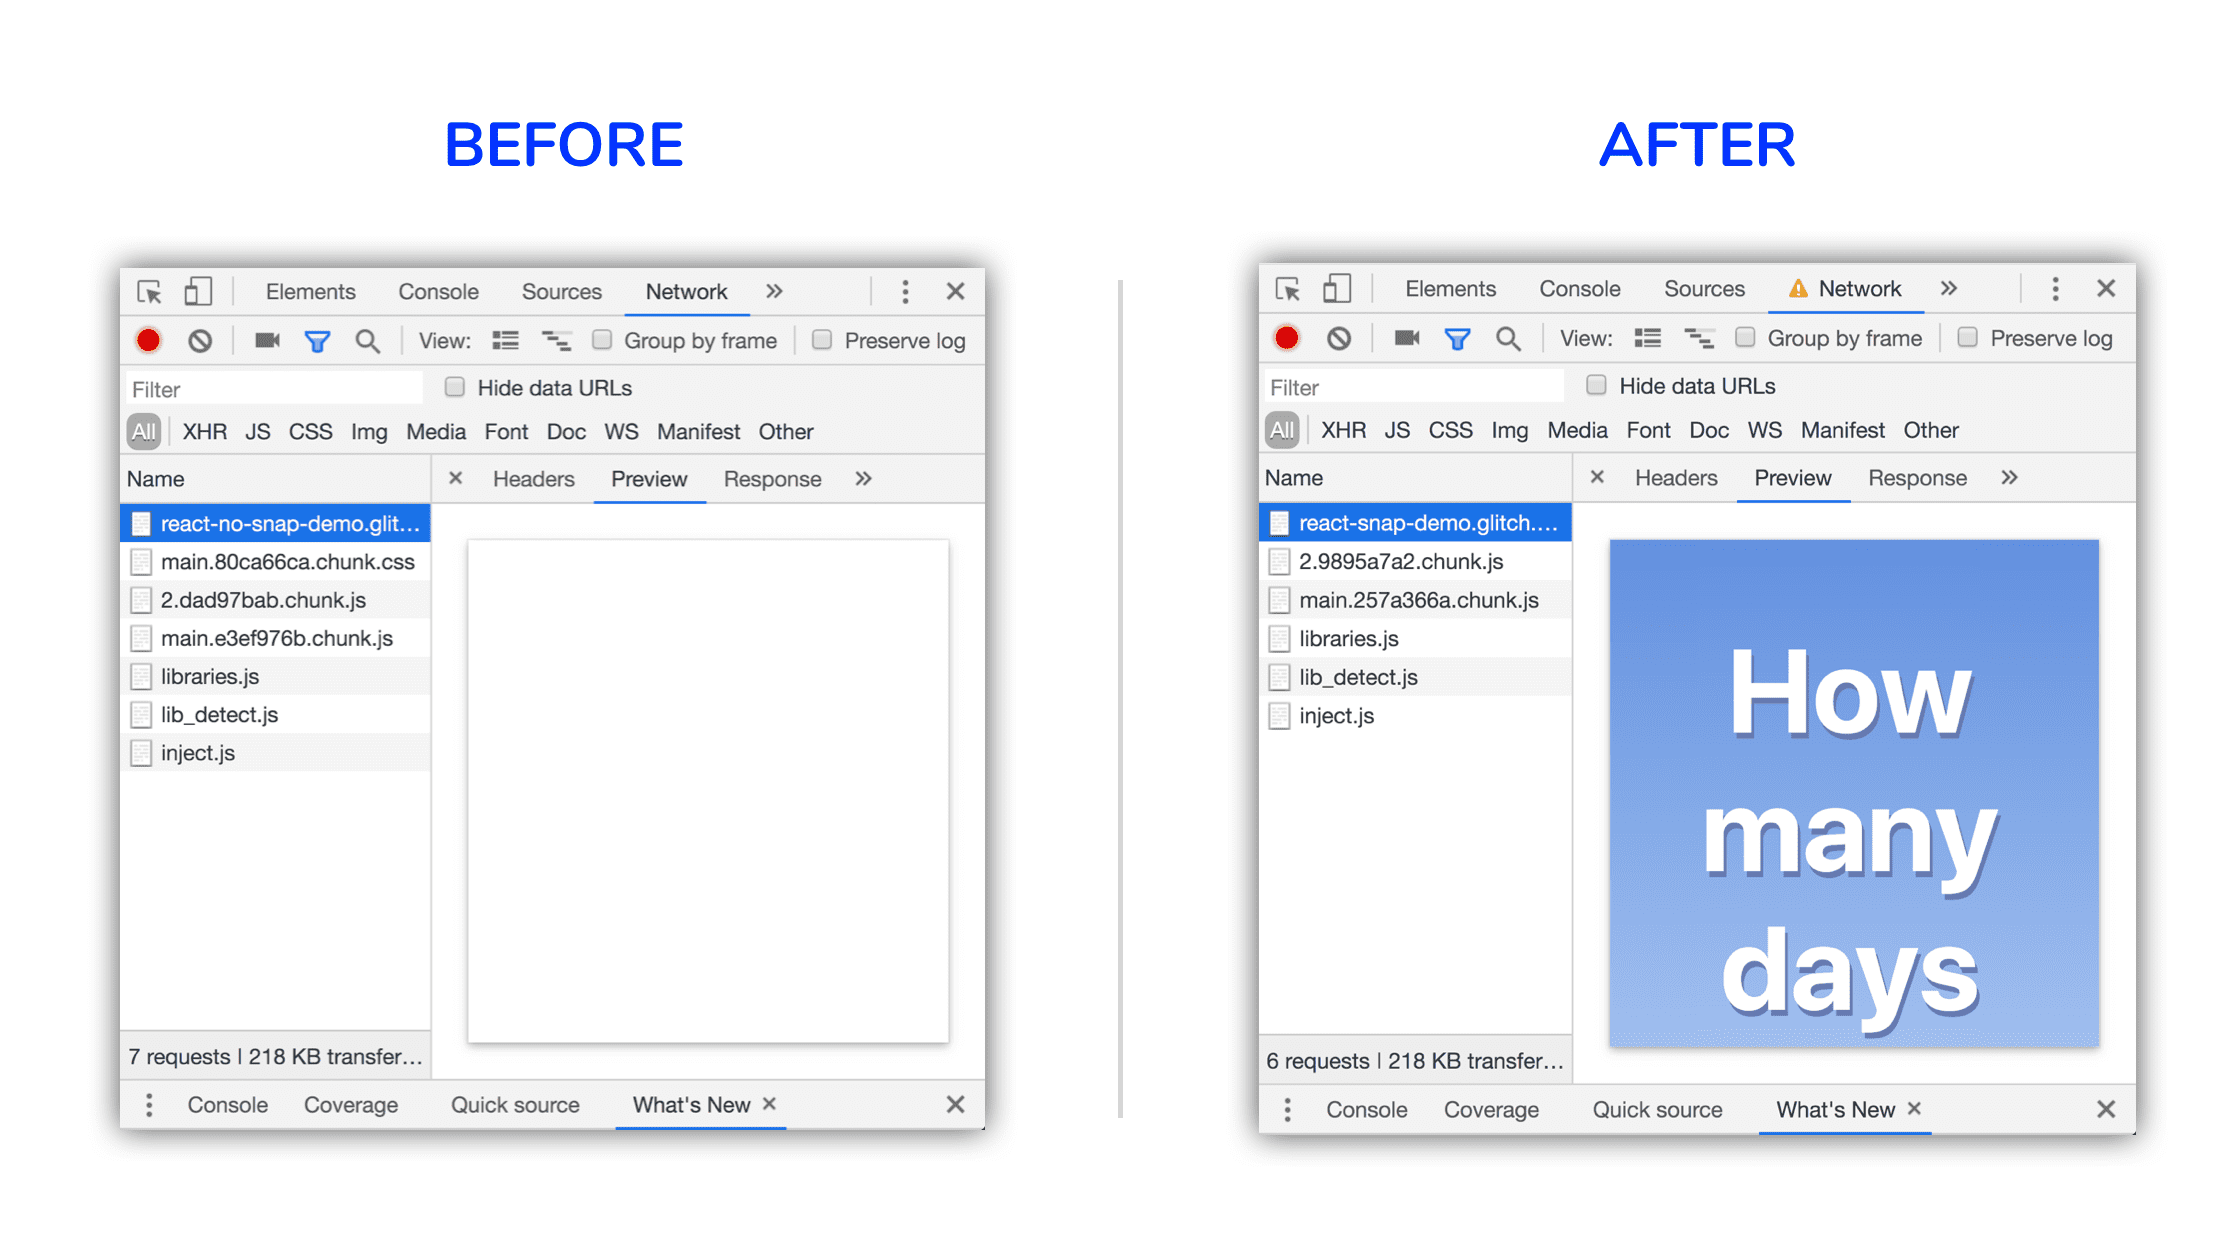 Un confronto prima e dopo. La sequenza successiva mostra i contenuti visualizzati e gli stili vengono definiti grazie a CSS essenziali incorporati.